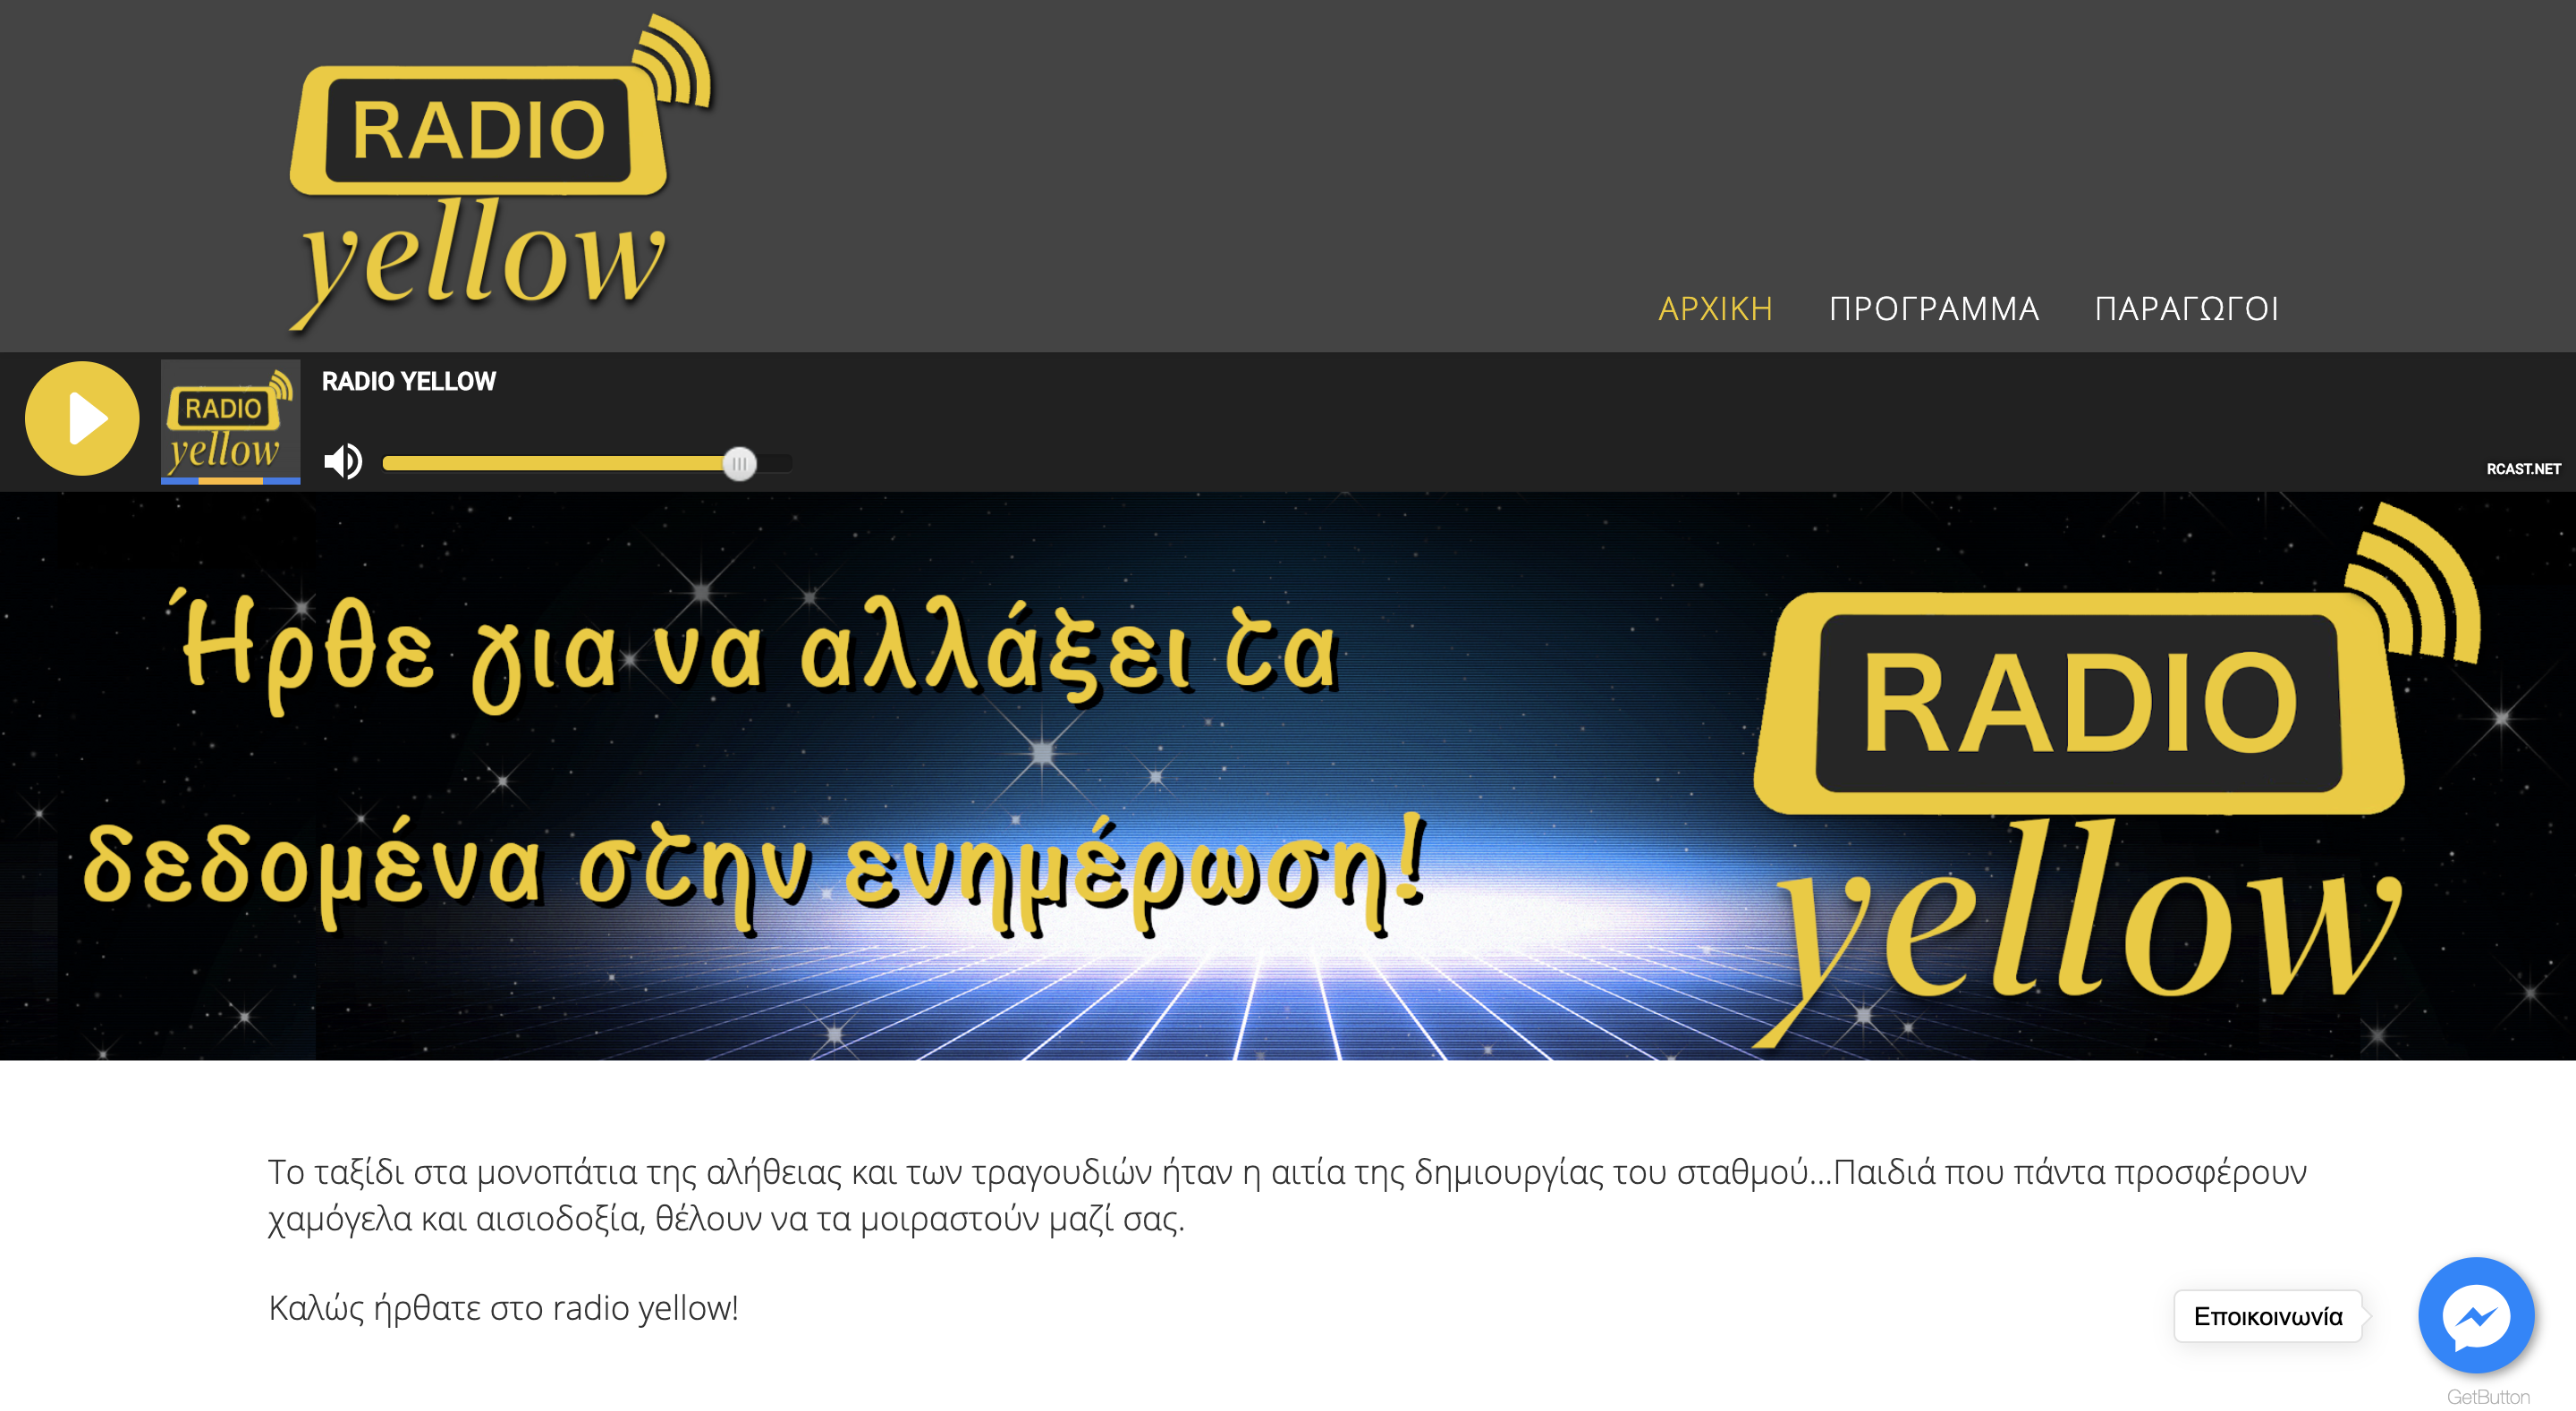 Σχεδίαση και ανάπτυξη δυναμικής ιστοσελίδες για τον διαδικτυακό ραδιοφωνικό σταθμό